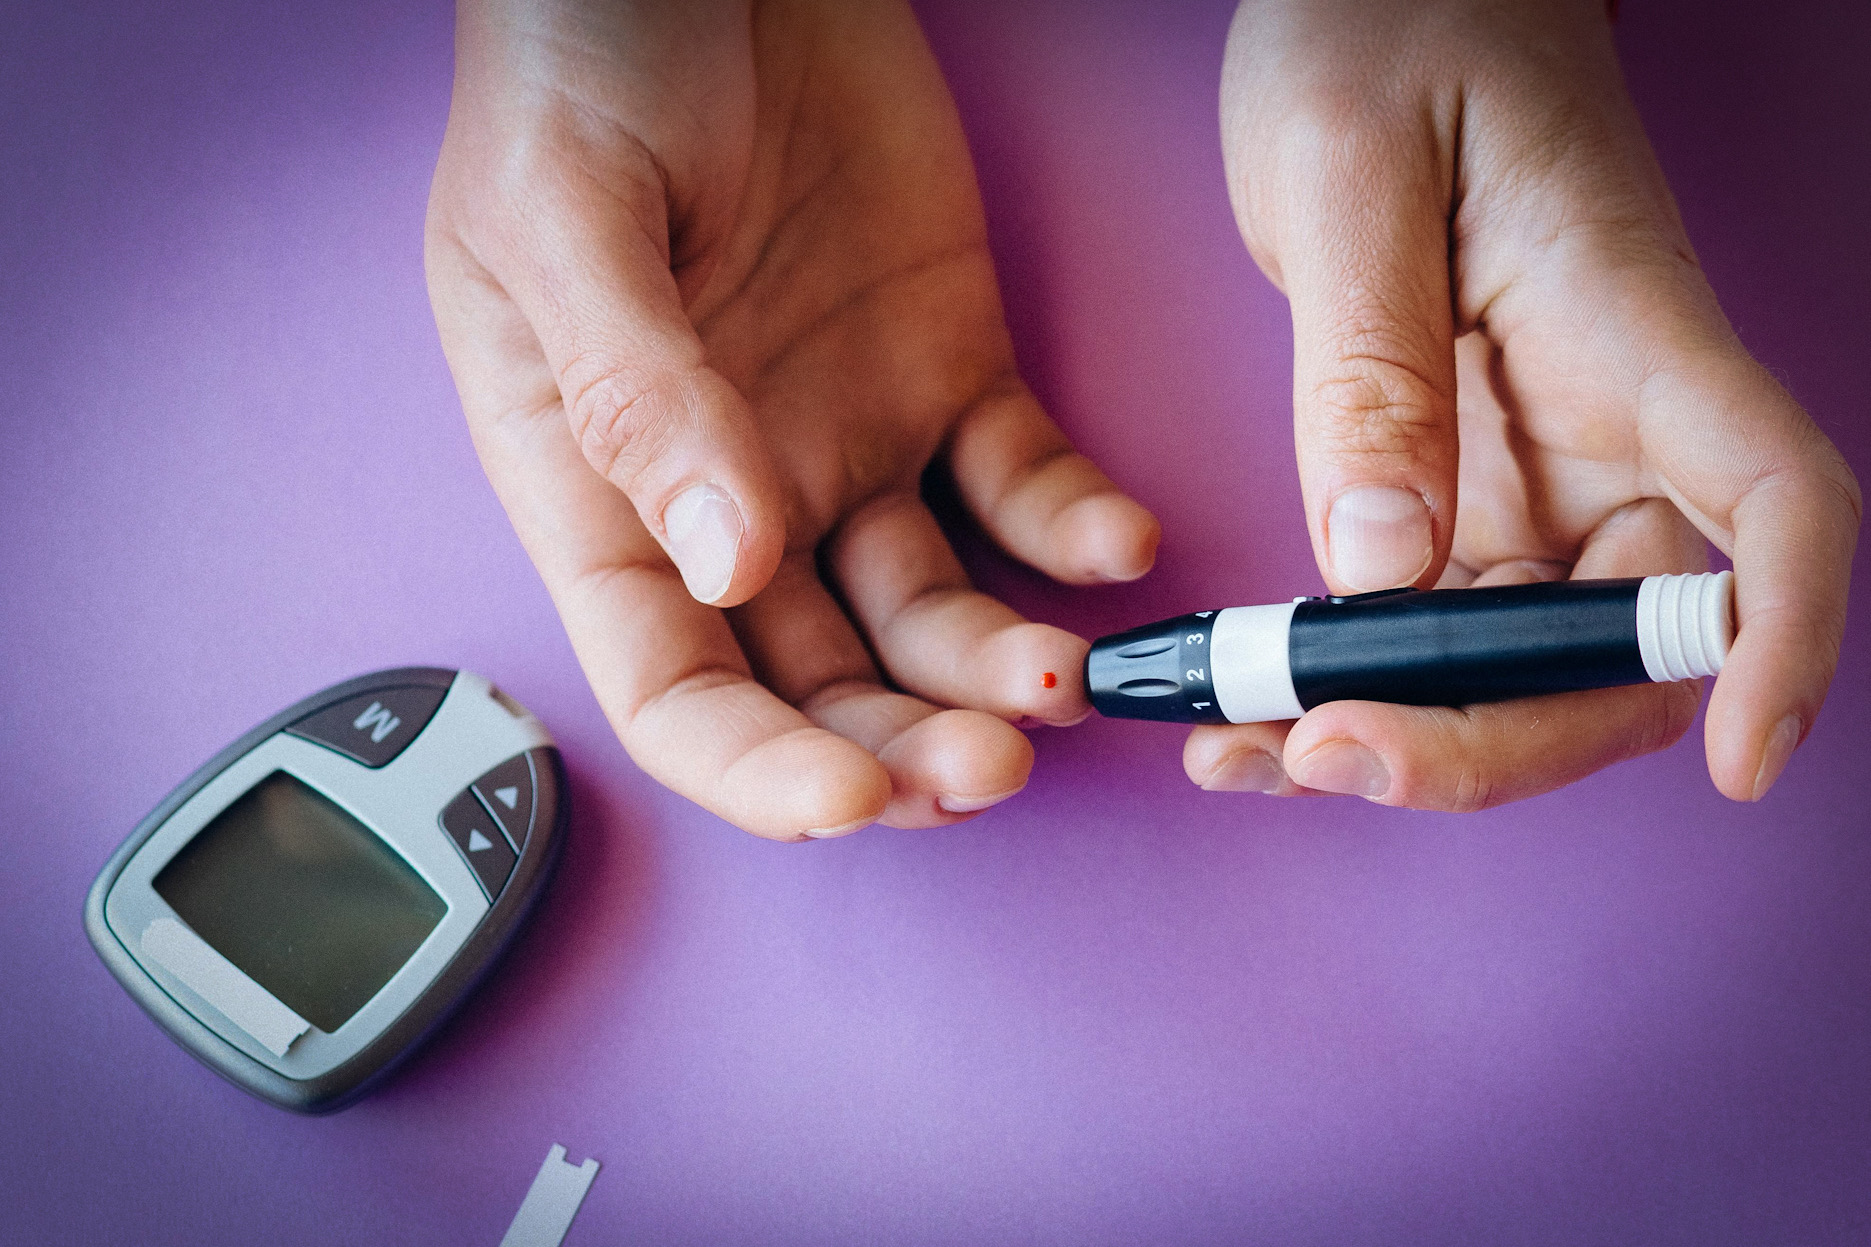 एक चिकित्सा उपकरण से रक्त शर्करा के स्तर को मापना।